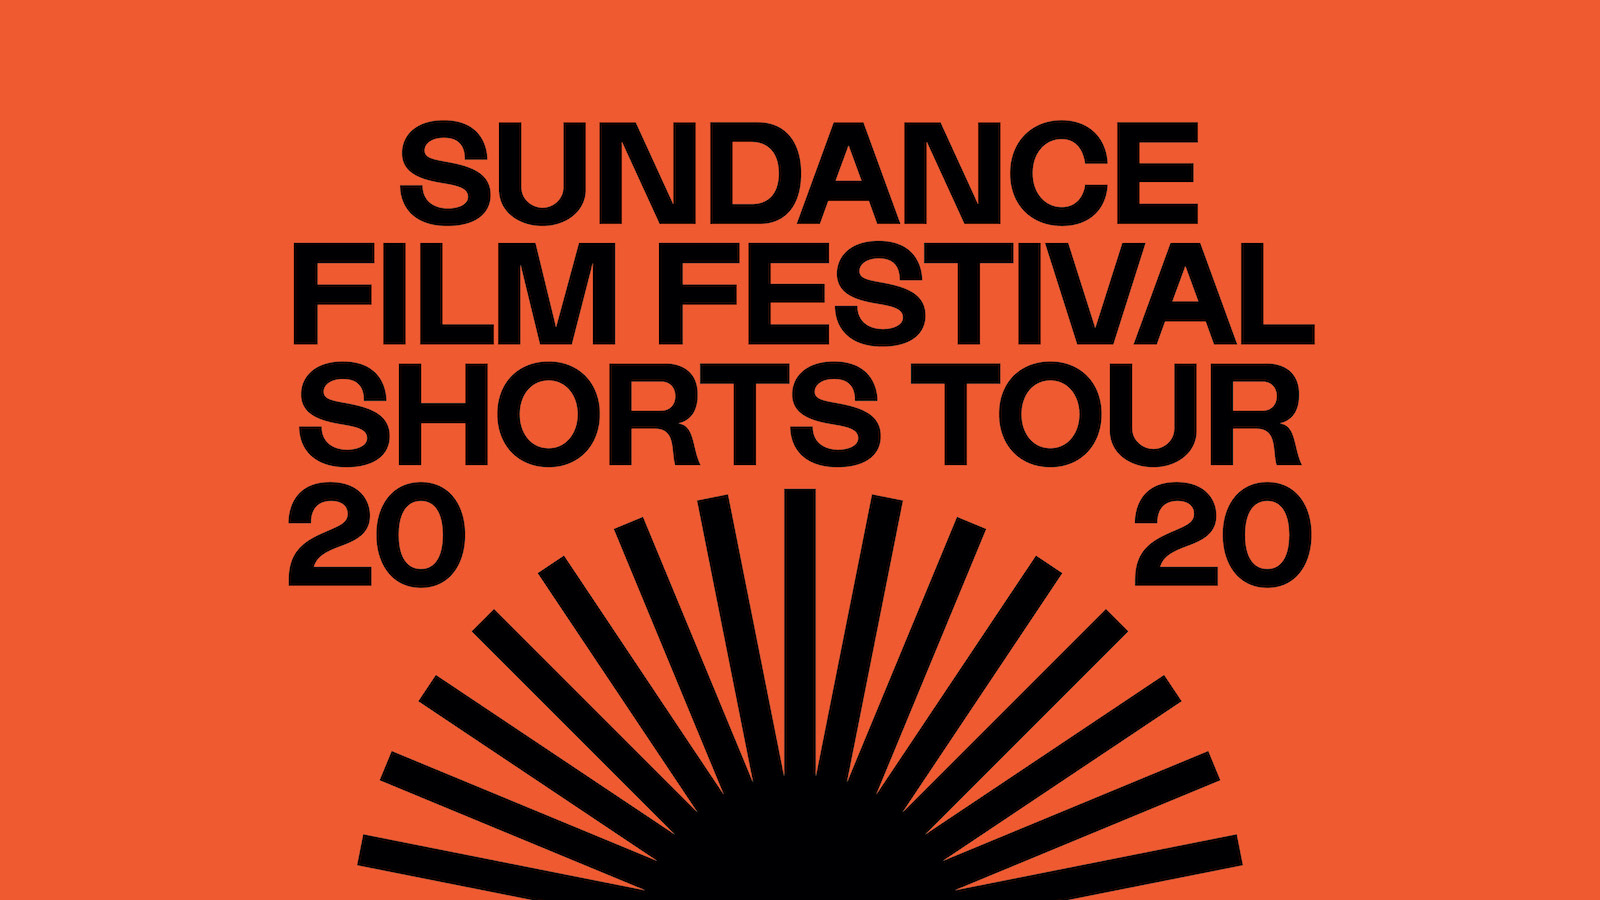 Sundance Film Festival Short Film Tour